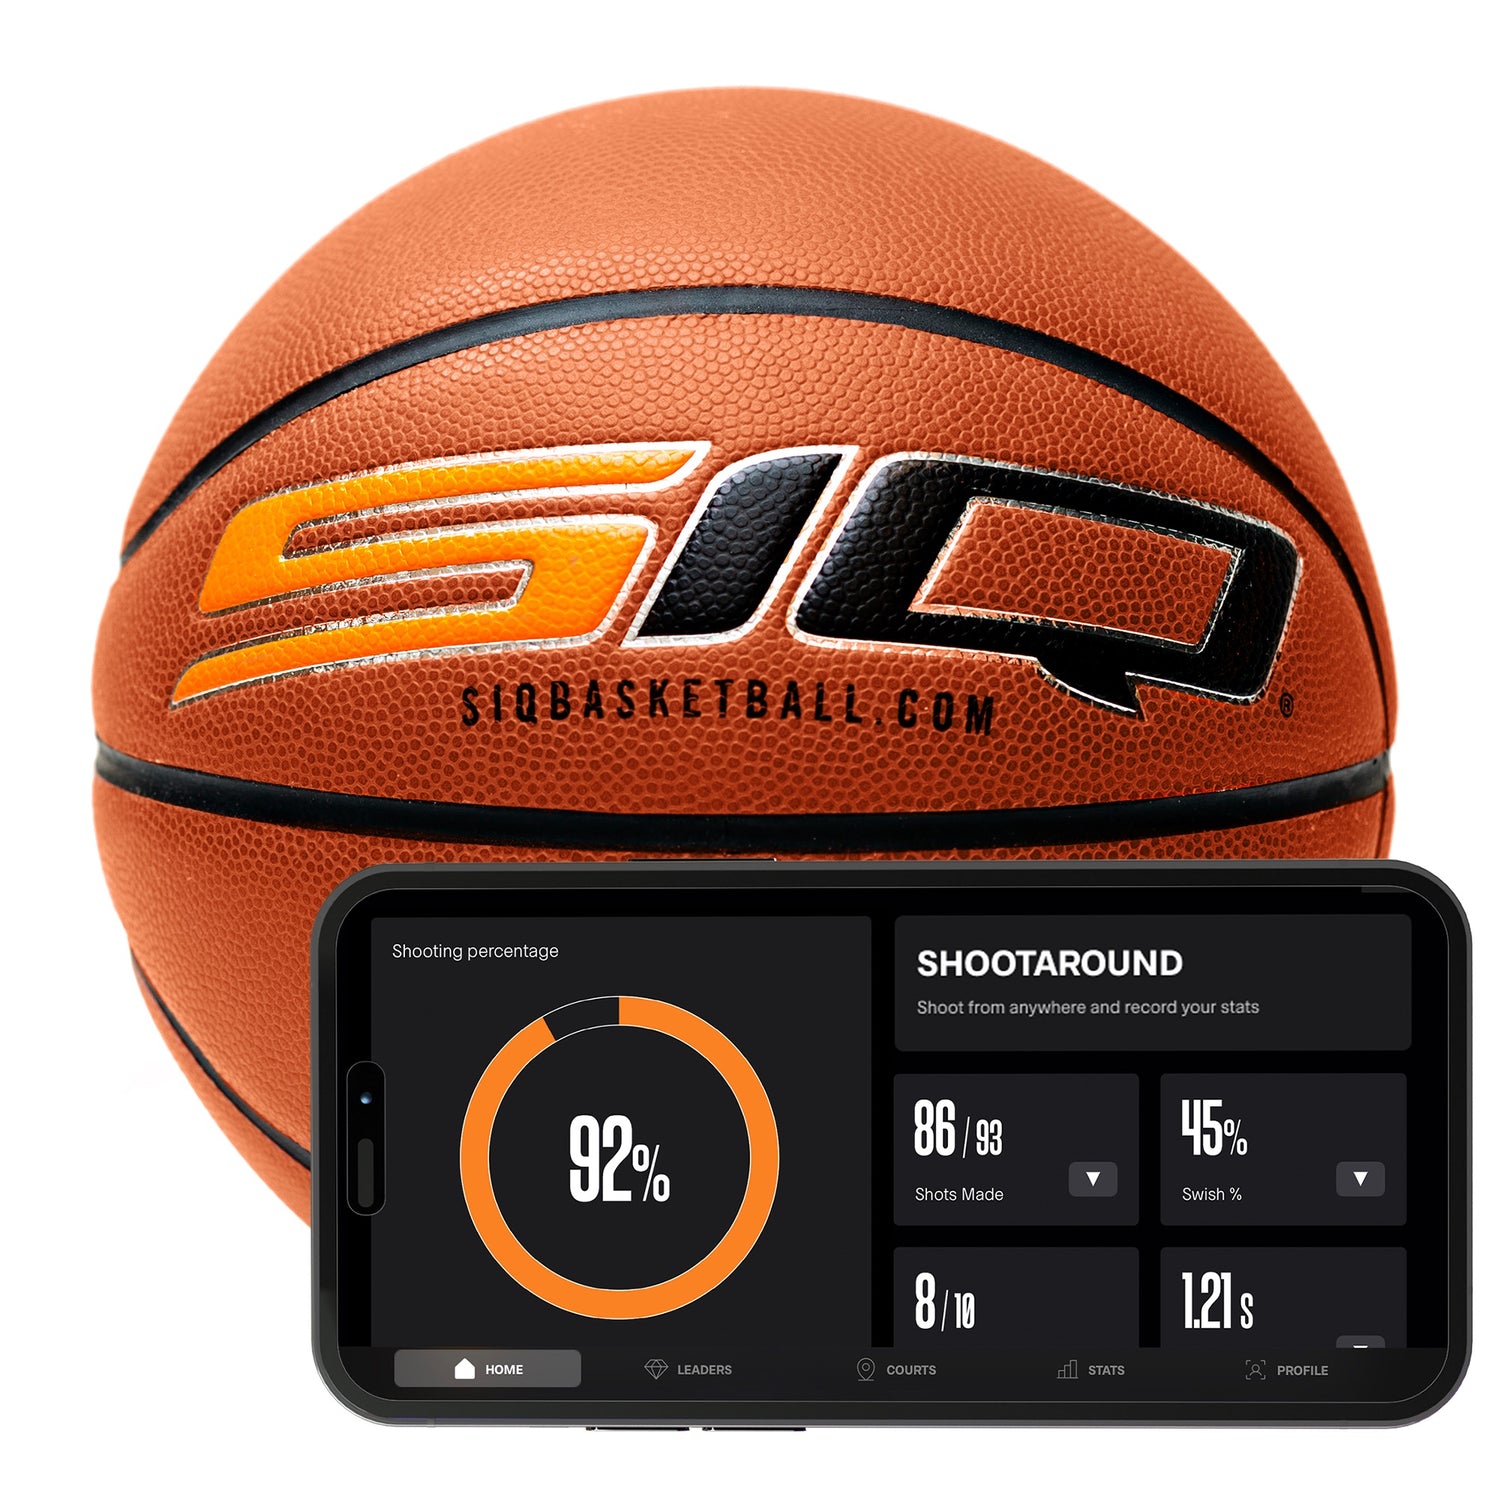 SIQ Basketballs